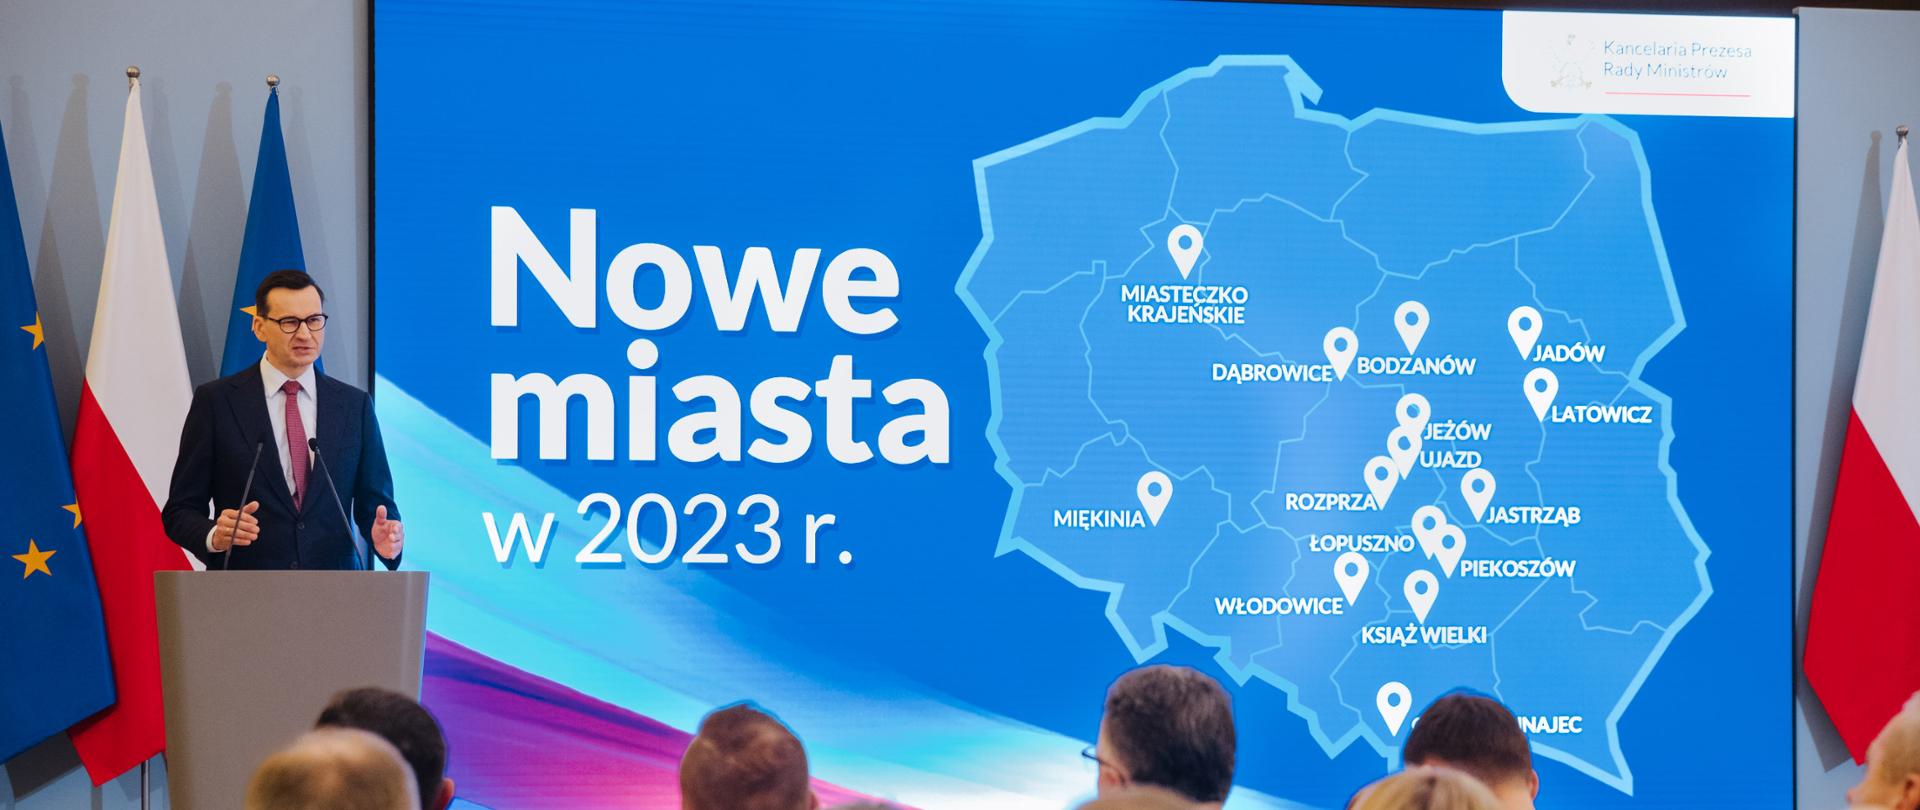 Premier Mateusz Morawiecki podczas konferencji pn. "Nowe miasta 2023 r." w KPRM. 